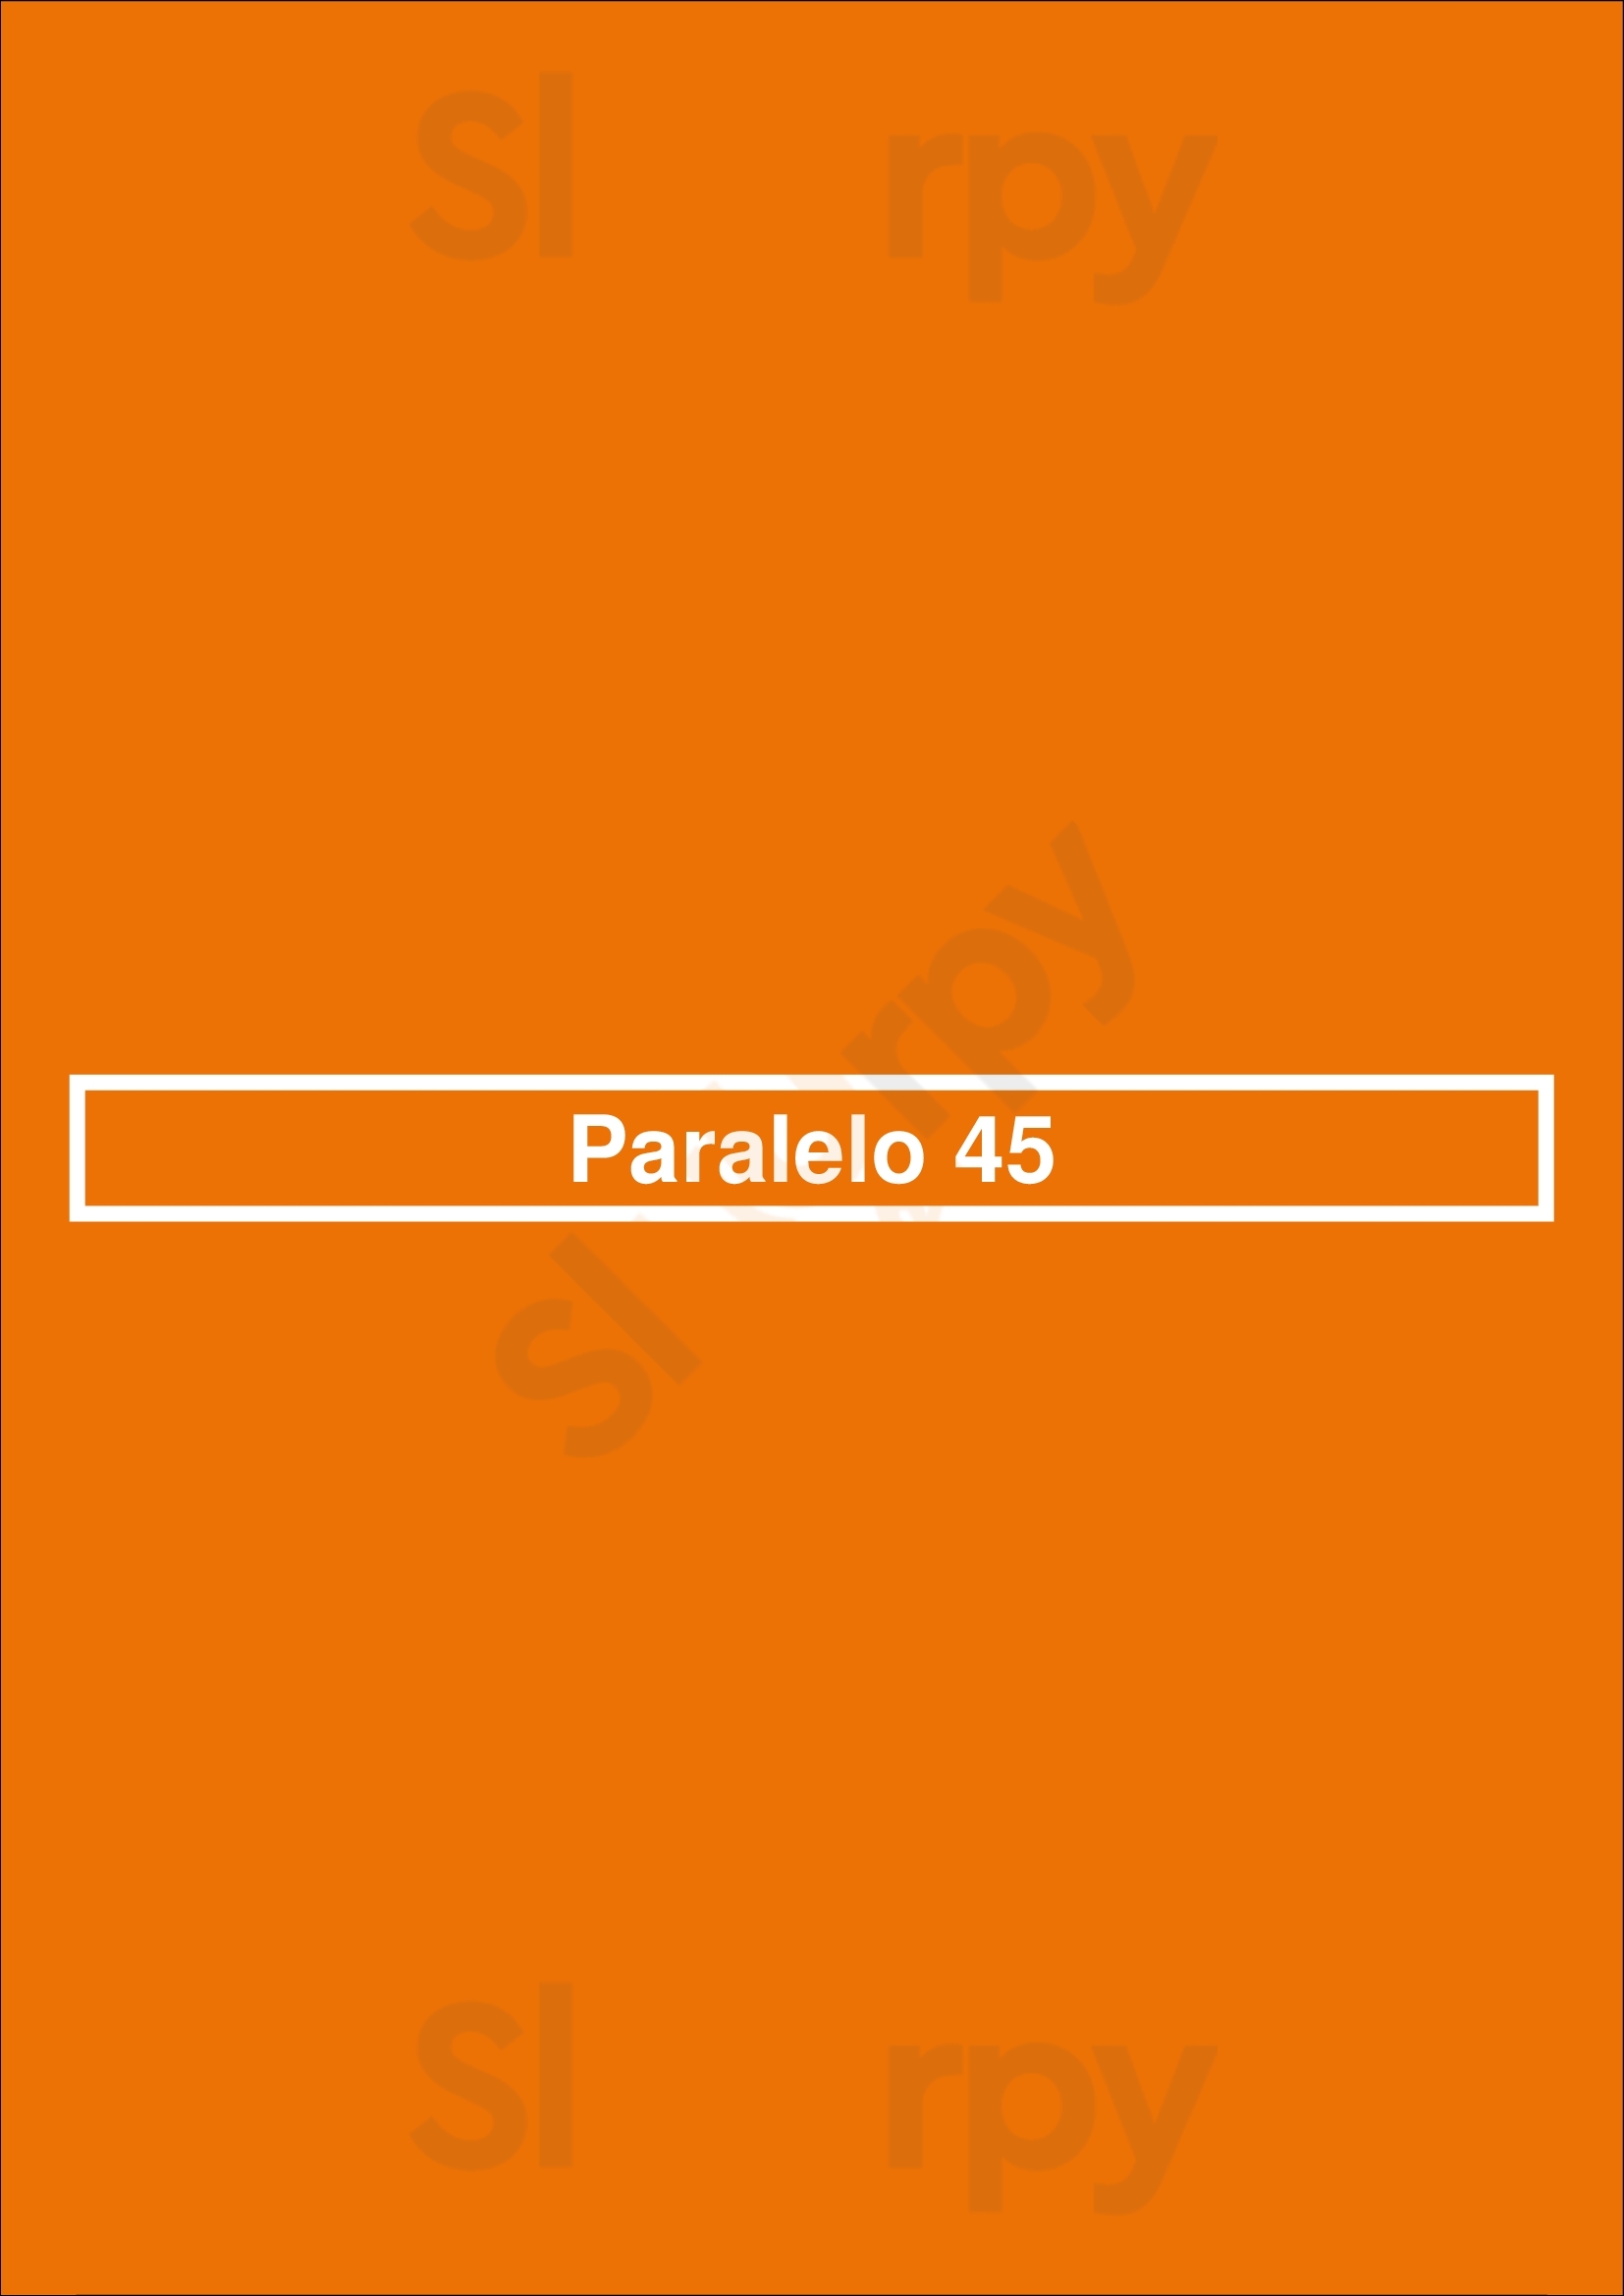 Paralelo 45 Lisboa Menu - 1